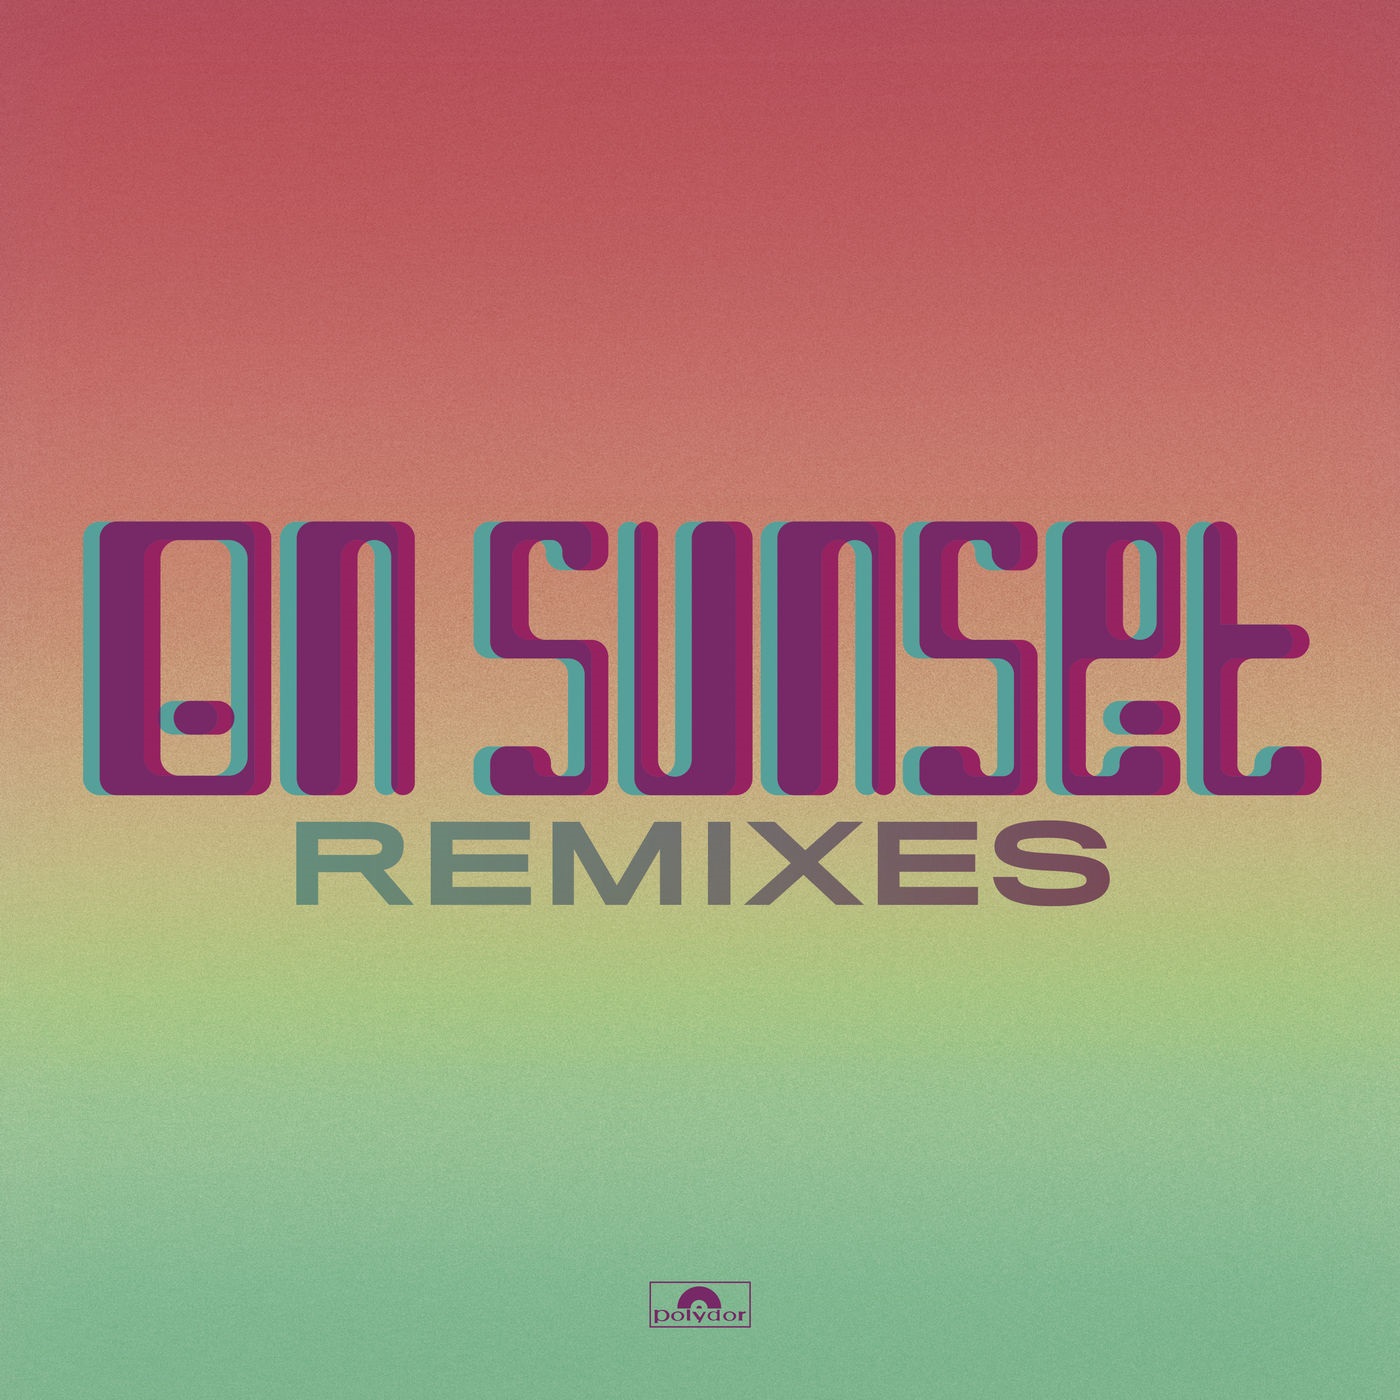 Paul Weller – On Sunset (Remixes) (2020) [FLAC 24bit/44,1kHz]